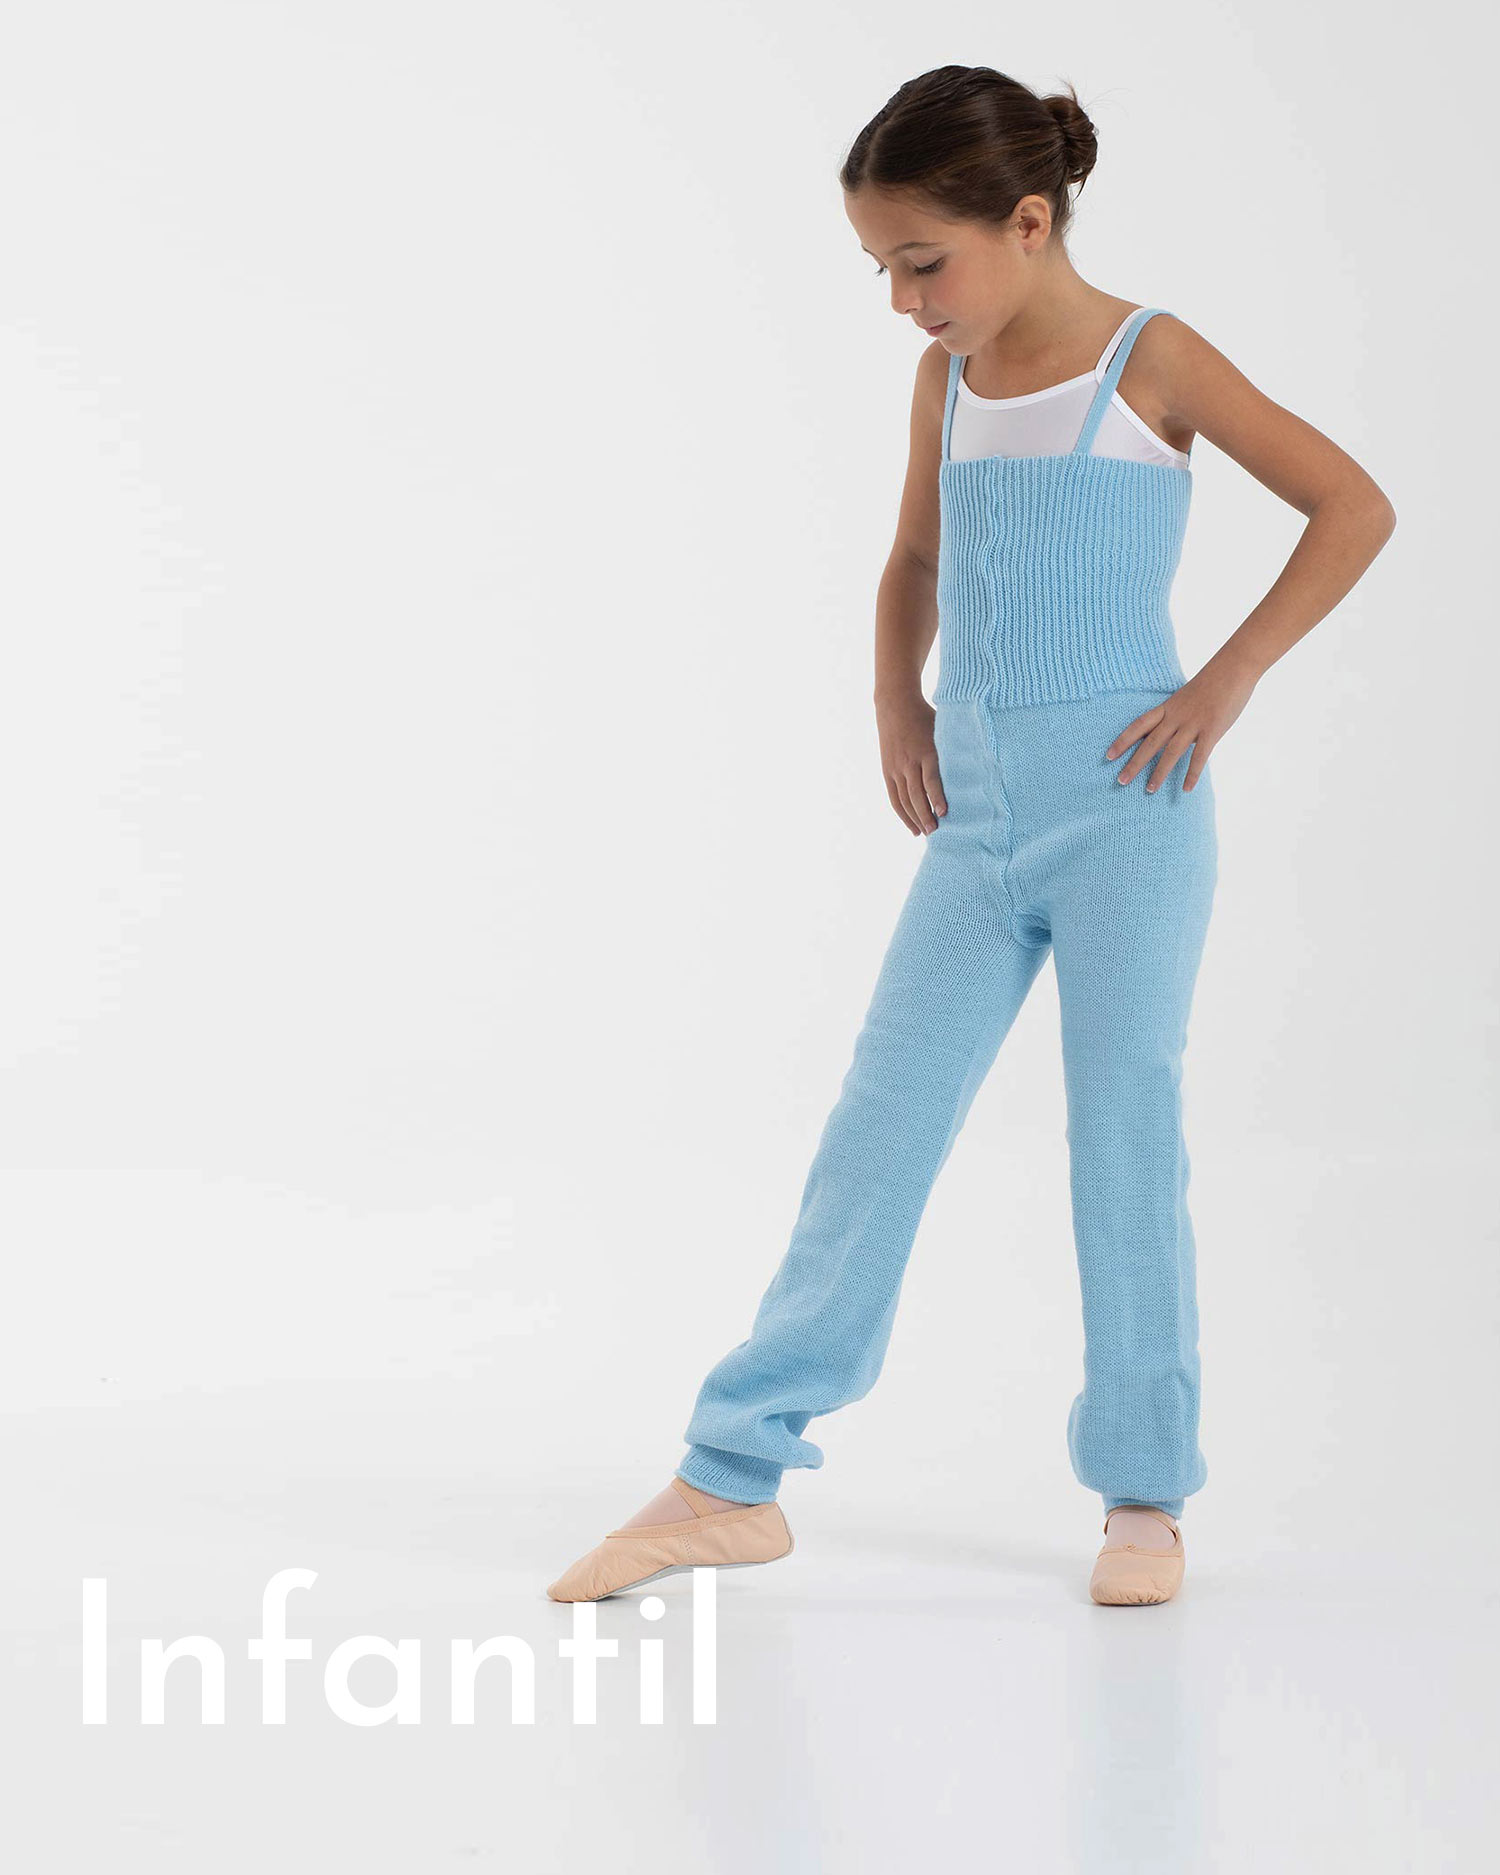 Ropa de ballet para niña: uniformes, medias, maillots y más